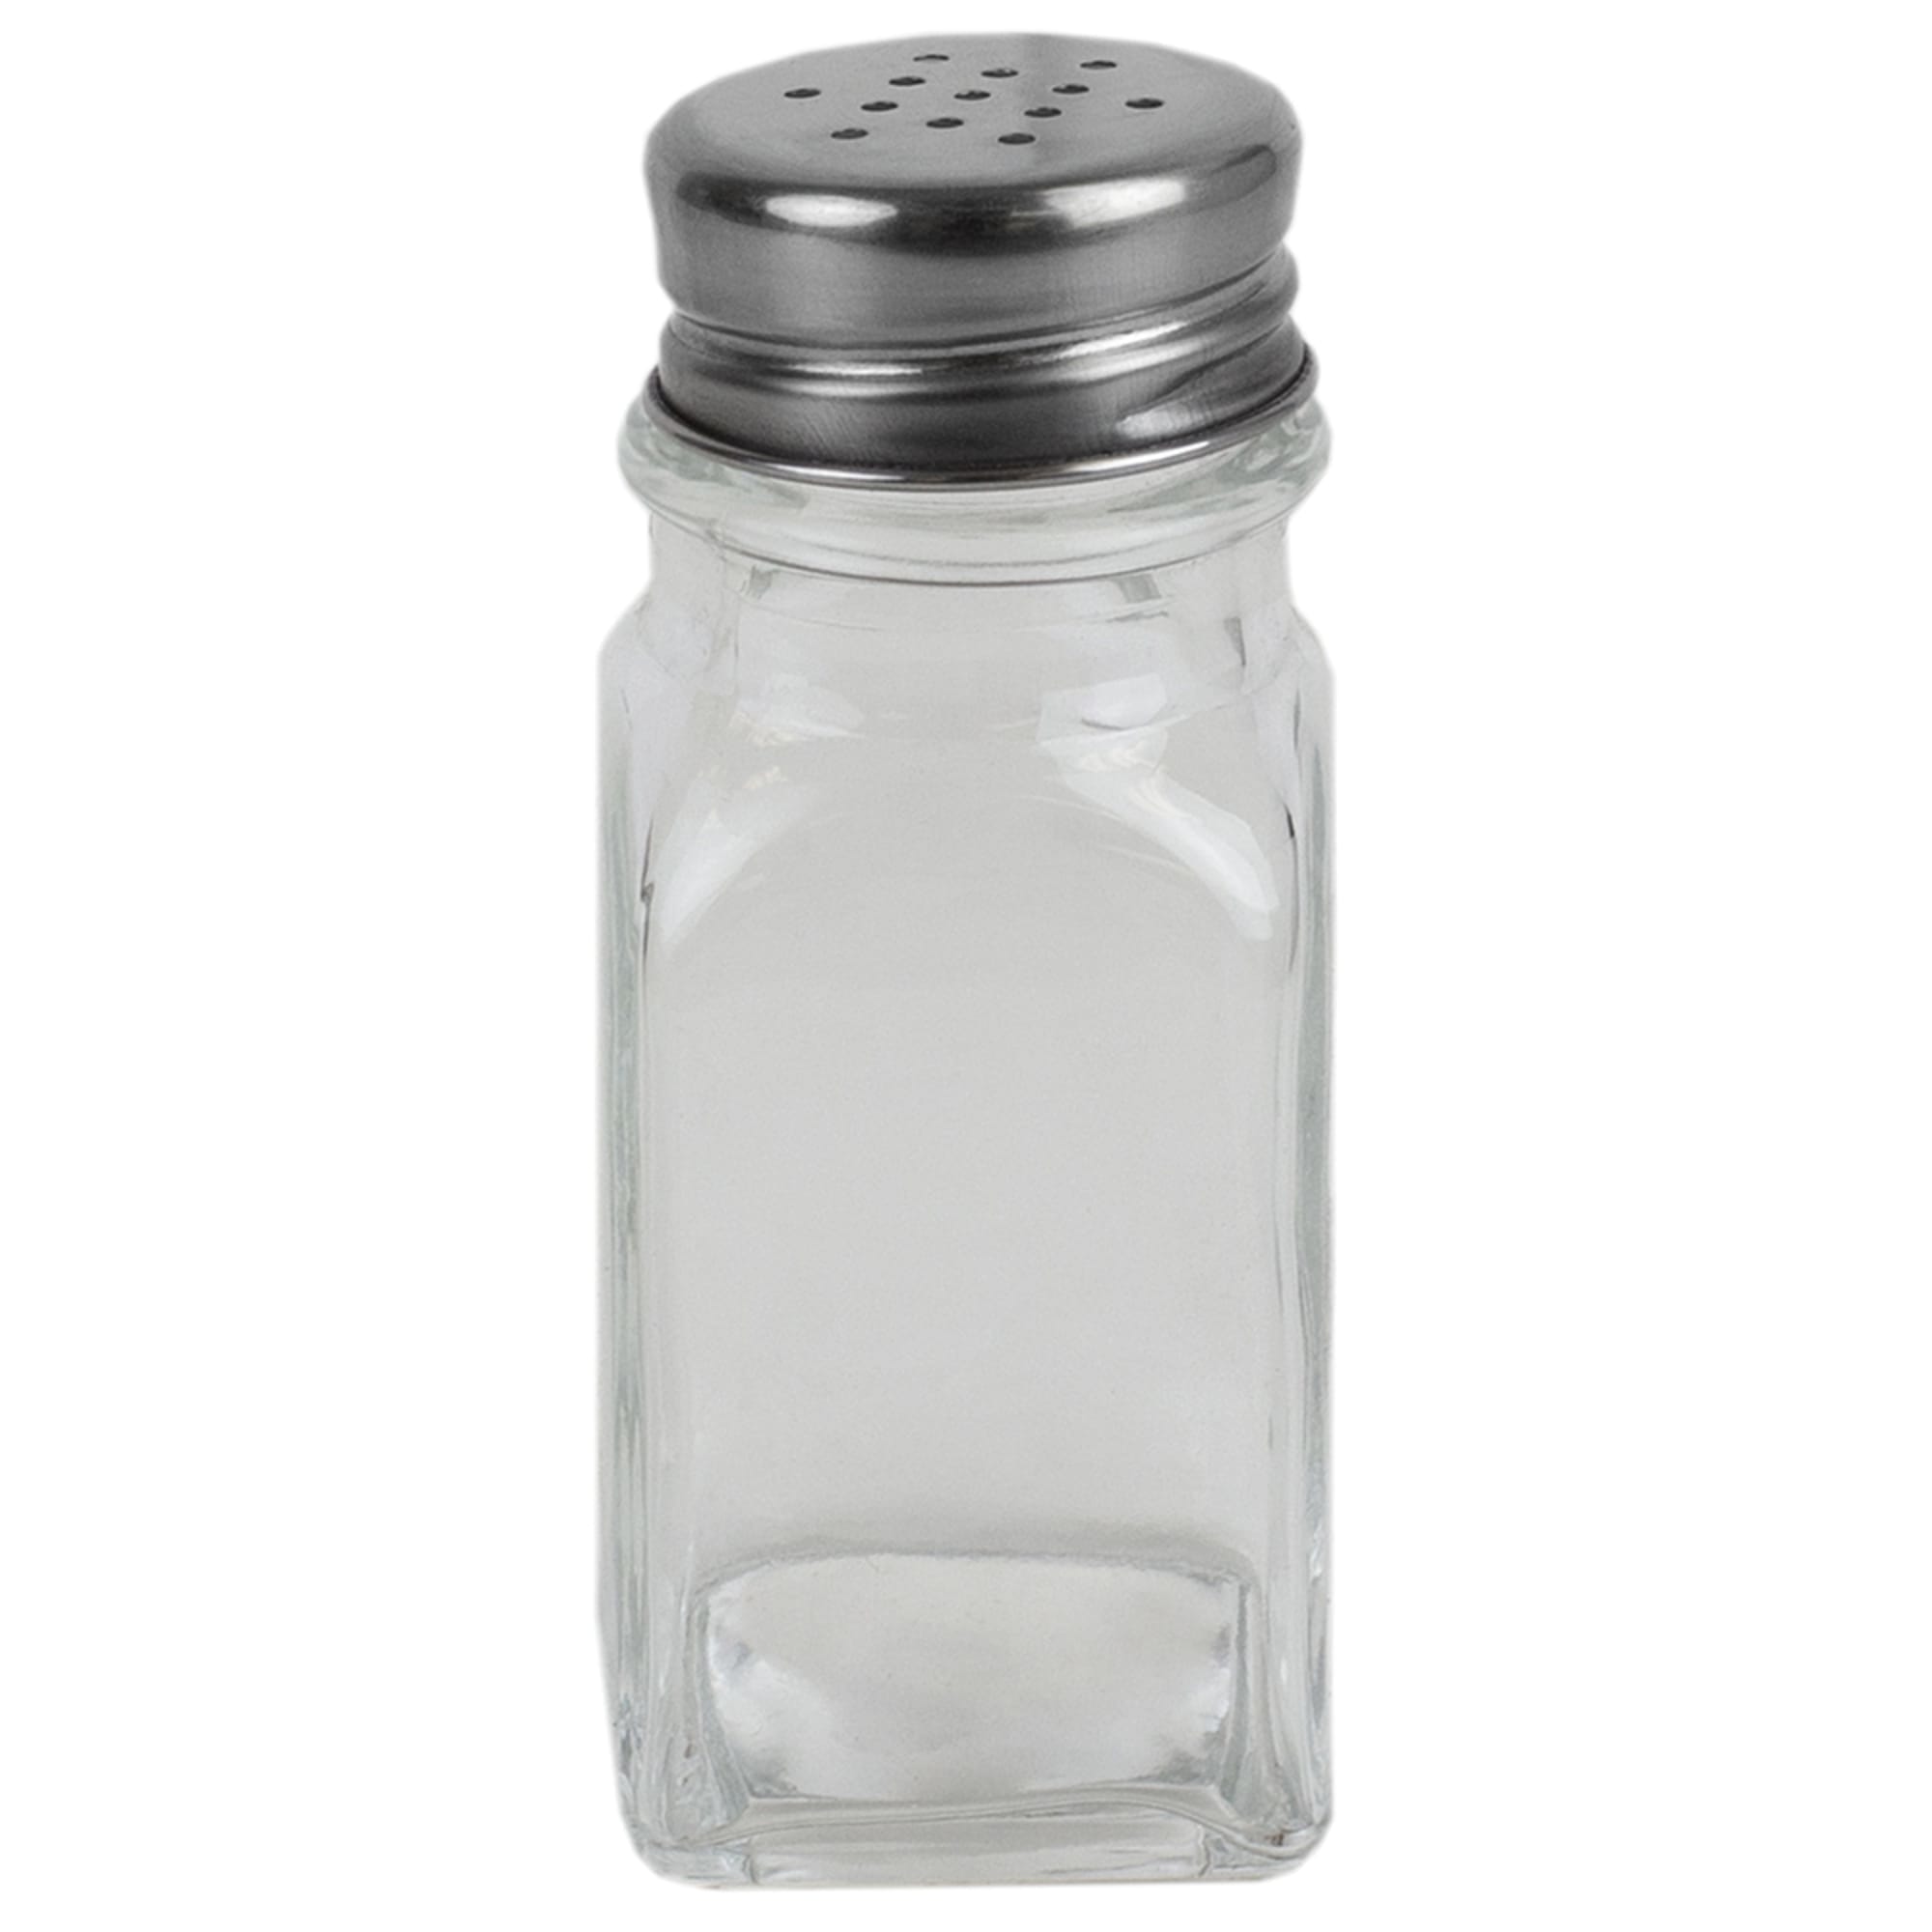 Salt shaker glass